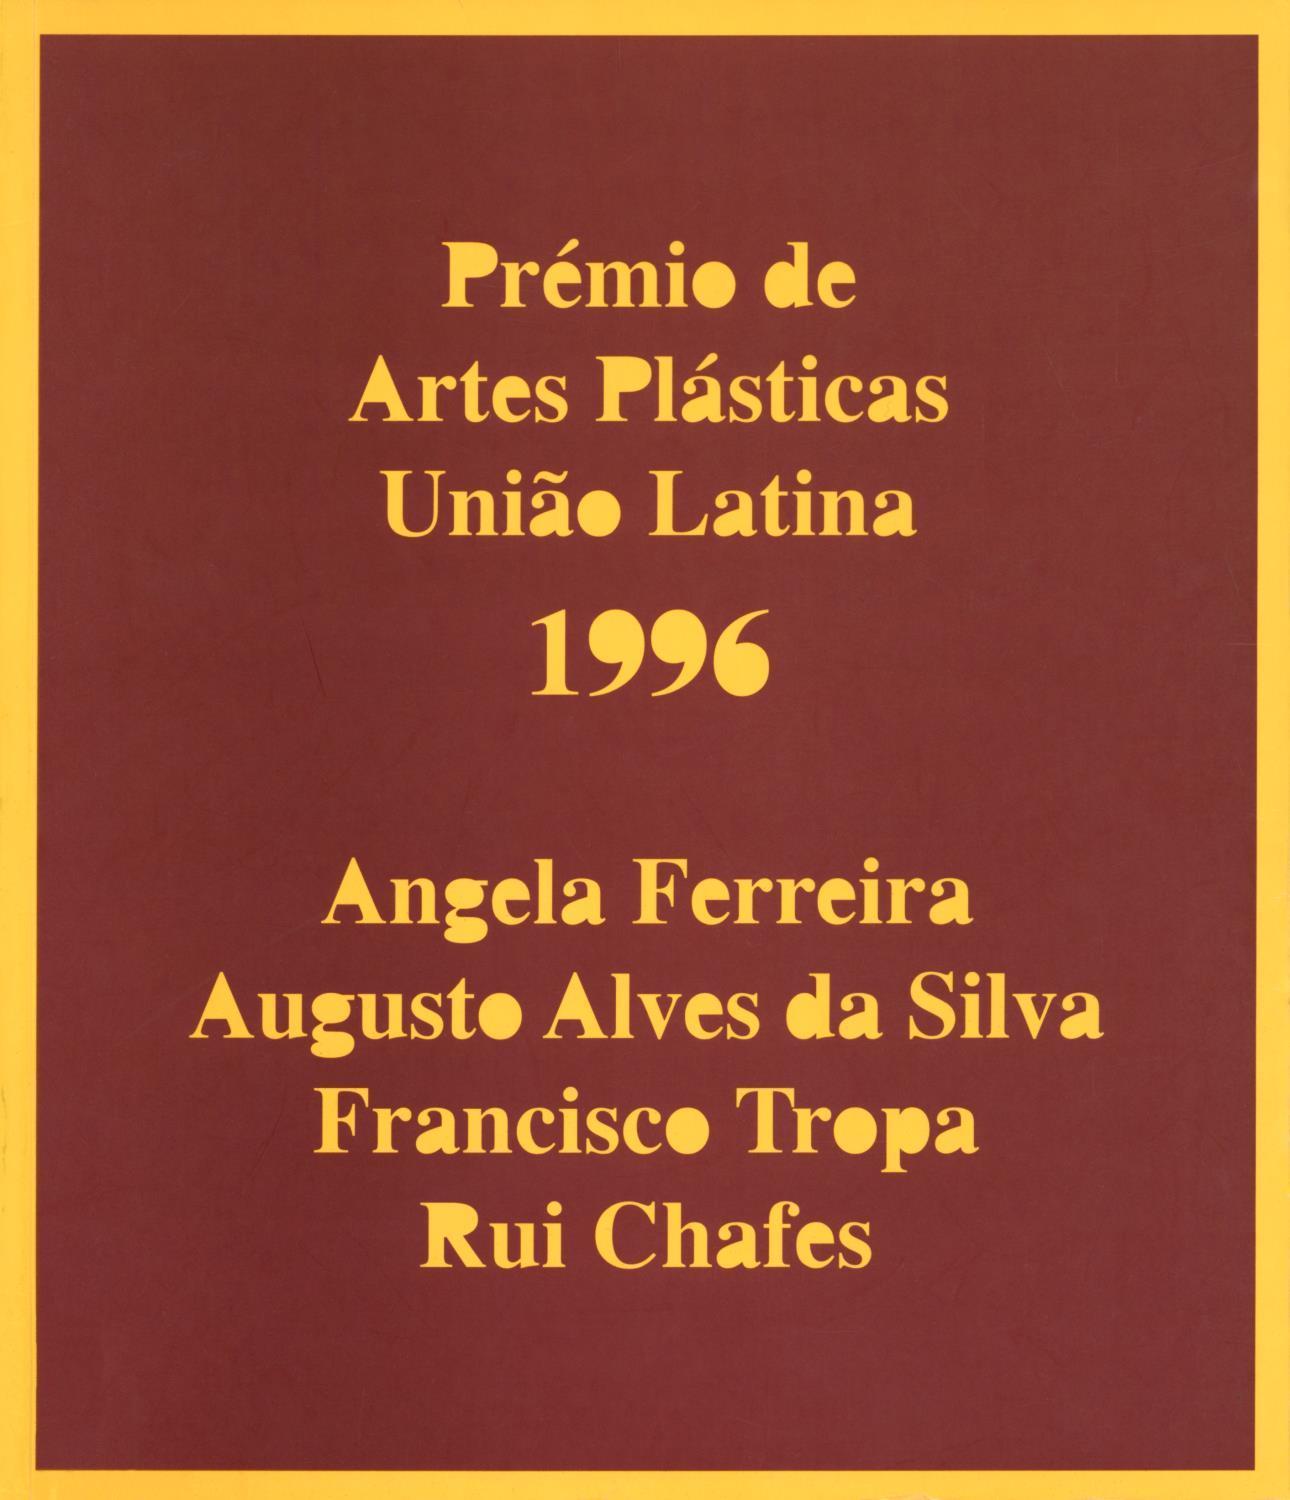 Prémio de Artes Plásticas União Latina 1996. Ângela Ferreira, Augusto Alves da Silva, Francisco Tropa, Rui Chafes